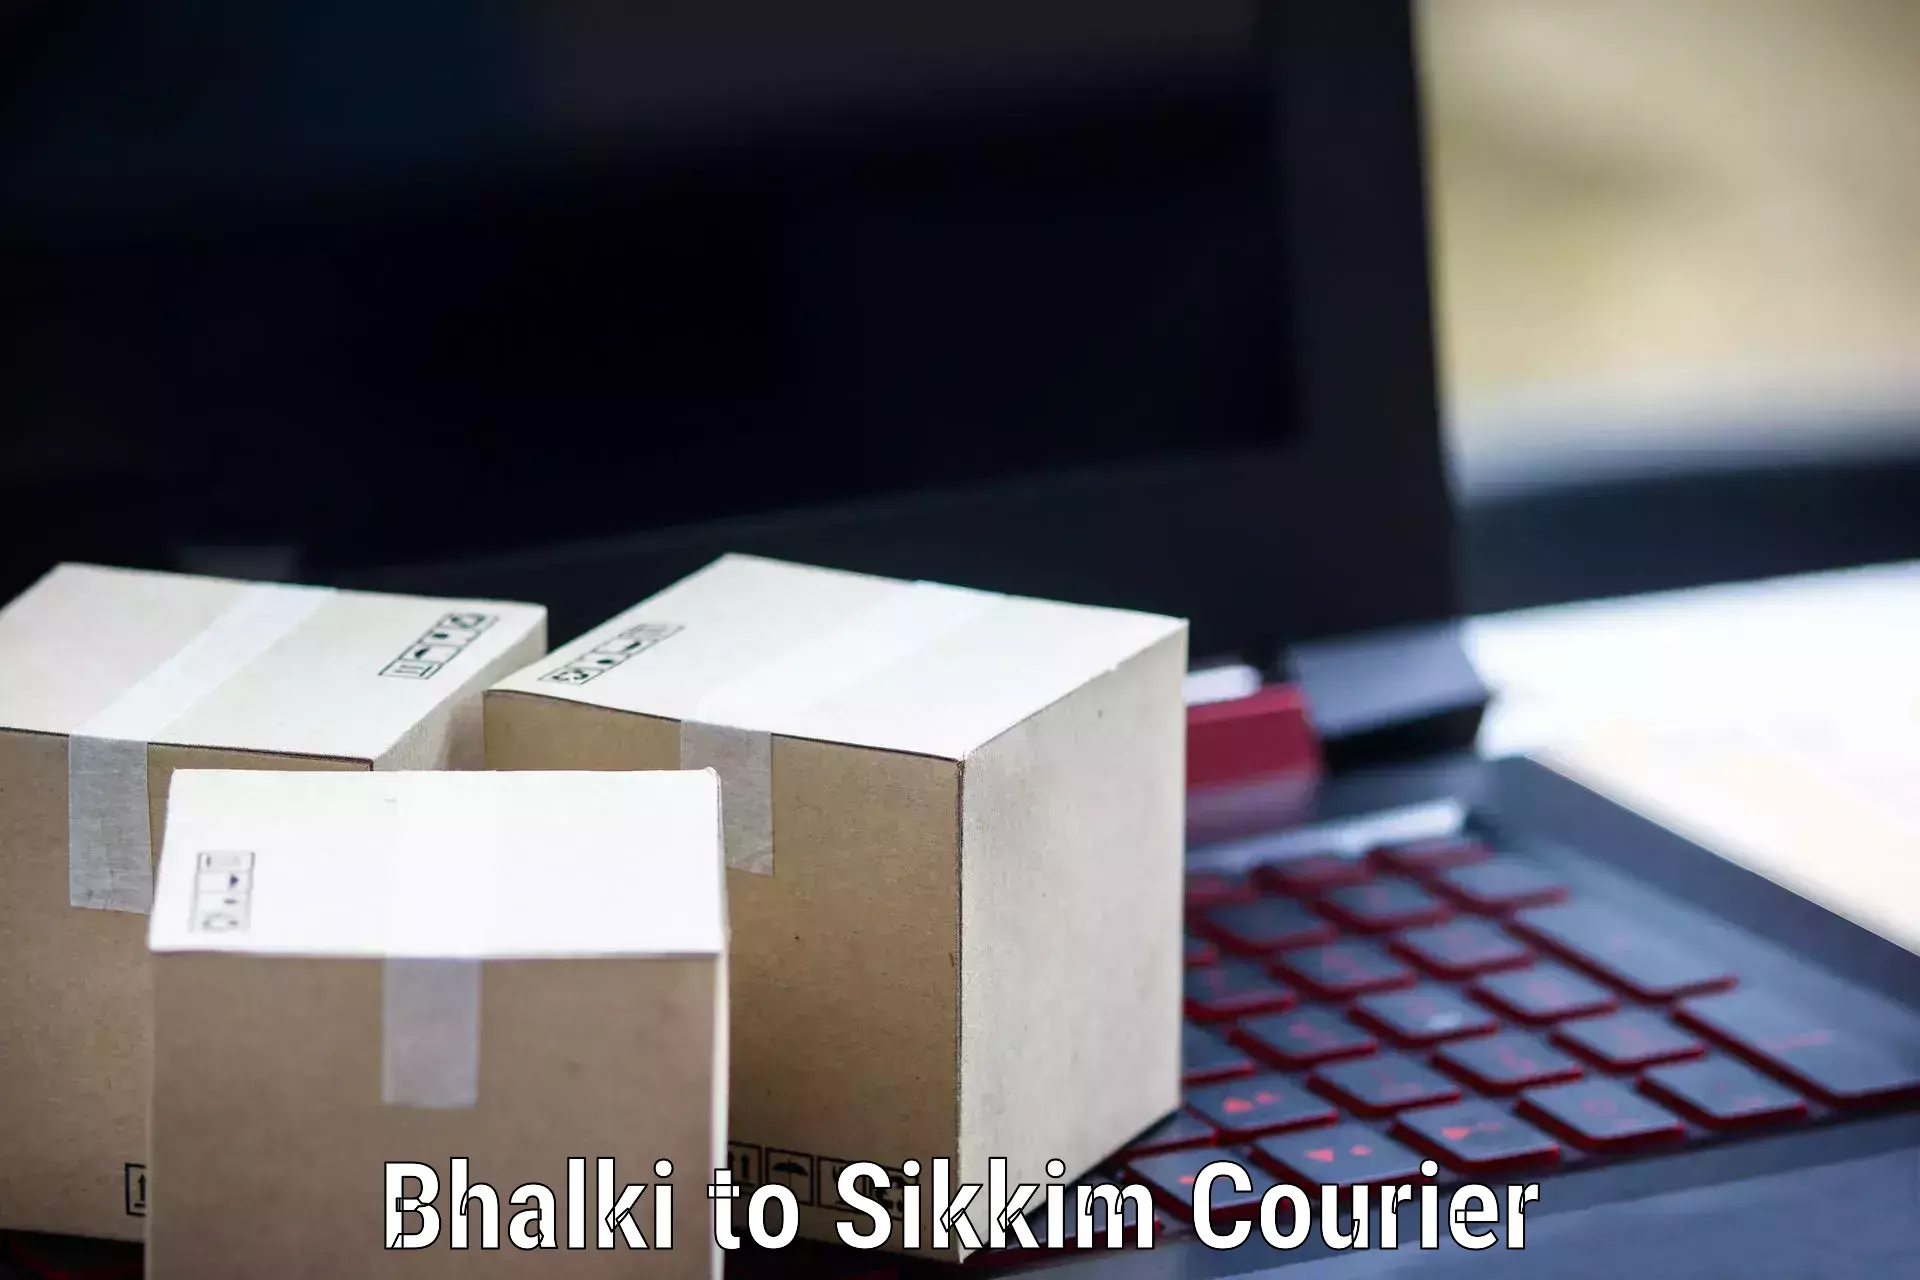 Pharmaceutical courier Bhalki to Sikkim